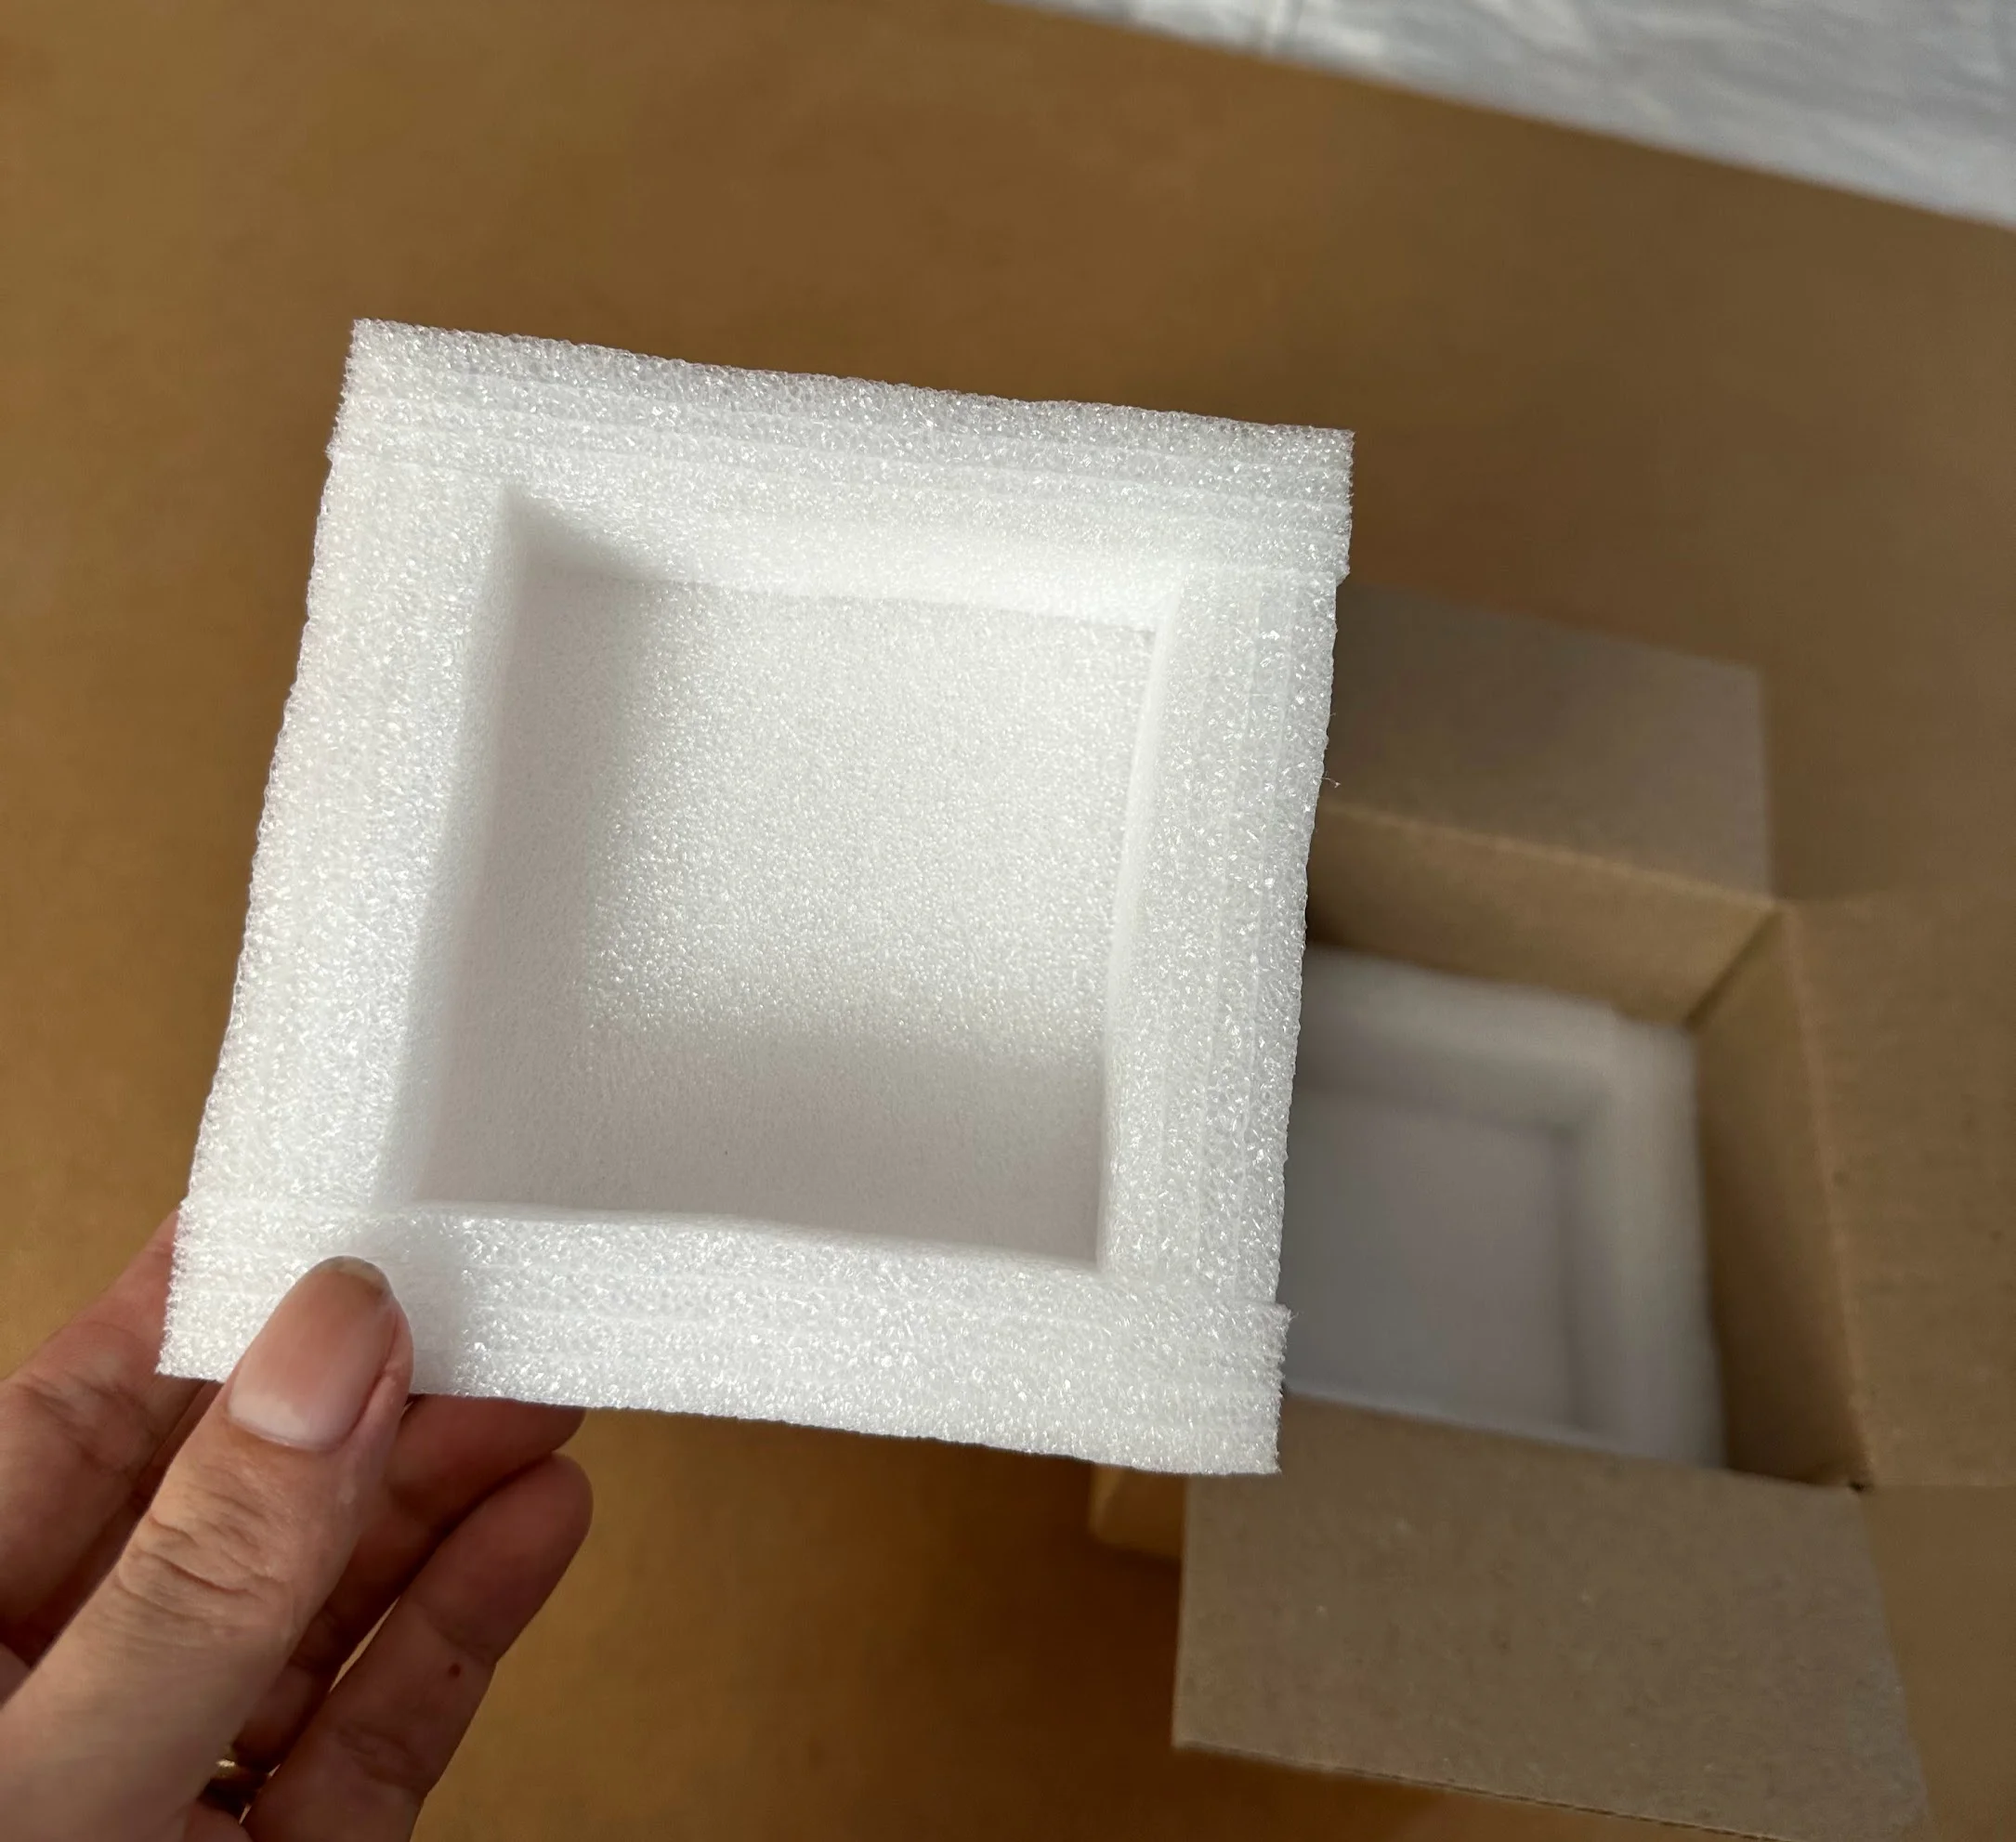 Xốp định hình kết hợp hộp carton chống sốc cho sản phẩm cốc sứ